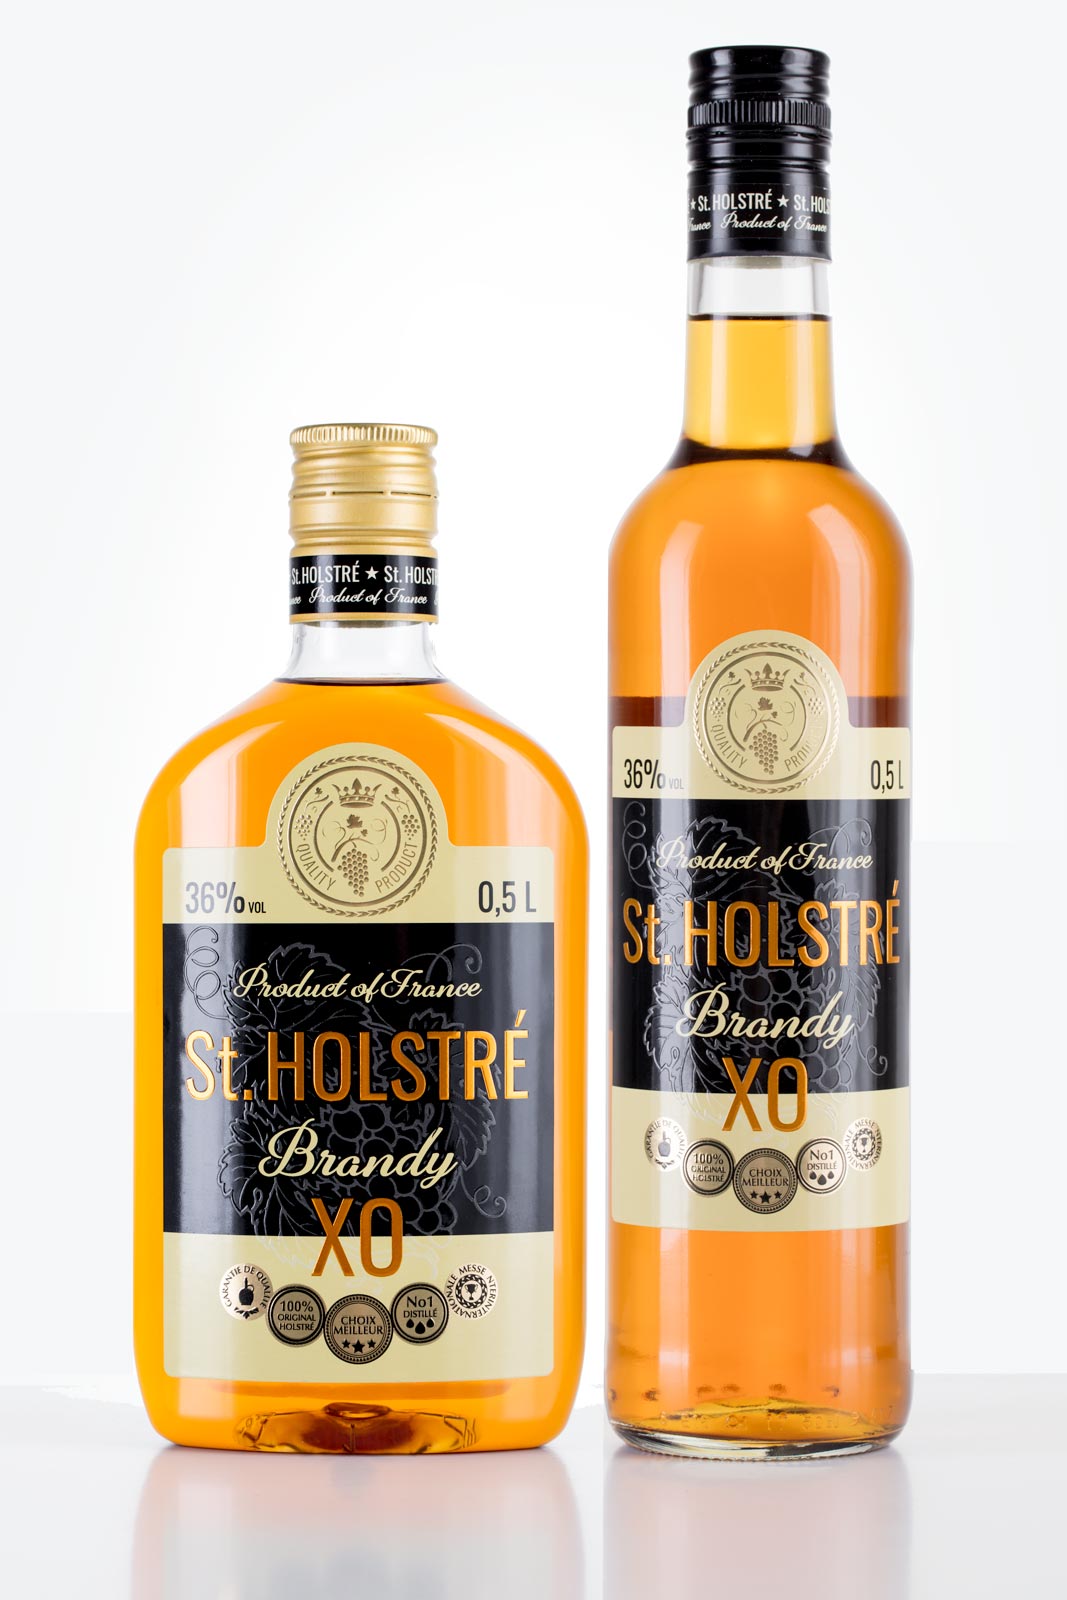 St. Holstré - T.Mark Ltd